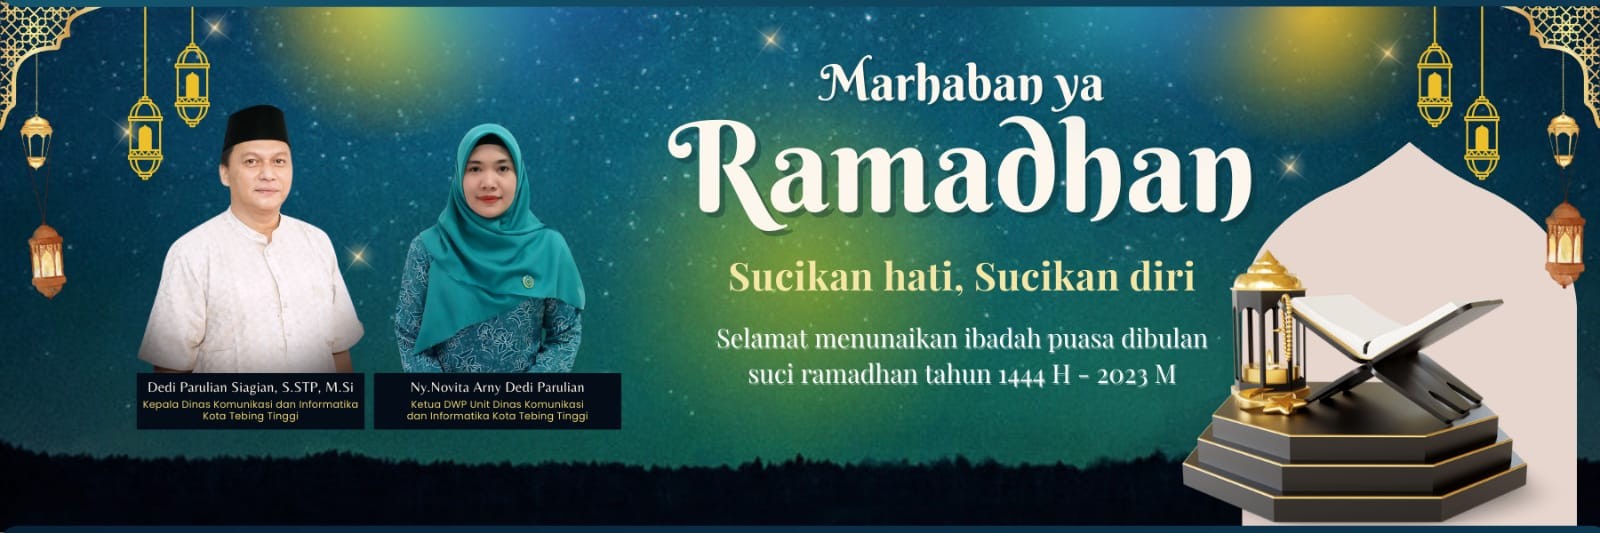 Marhaban ya Ramadhan 